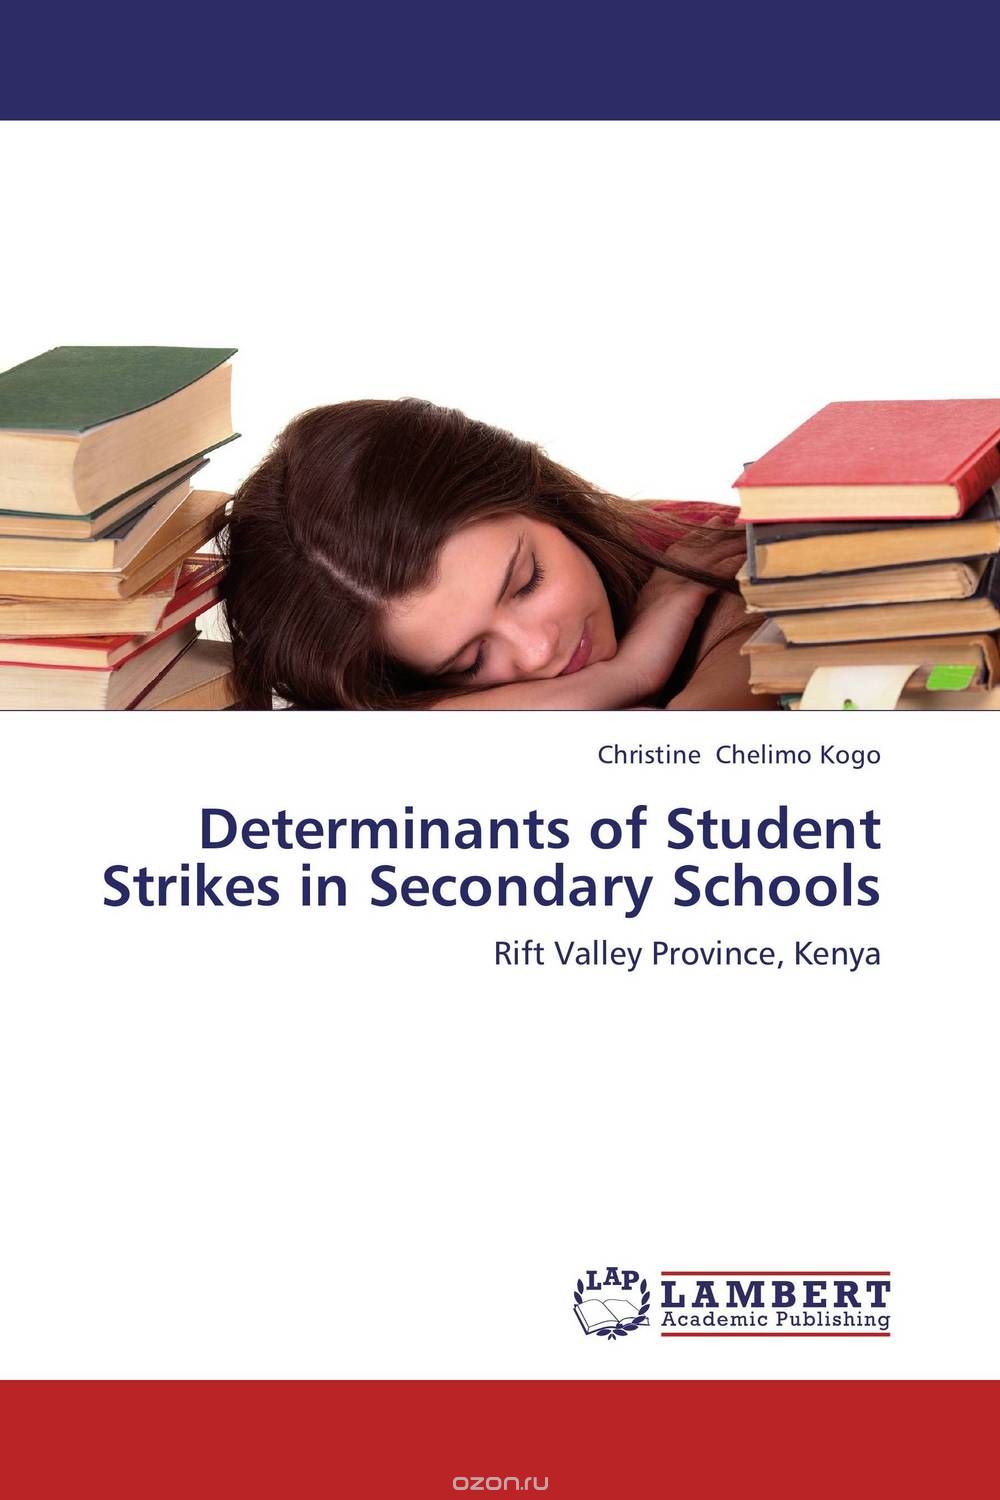 Скачать книгу "Determinants of Student Strikes in Secondary Schools"